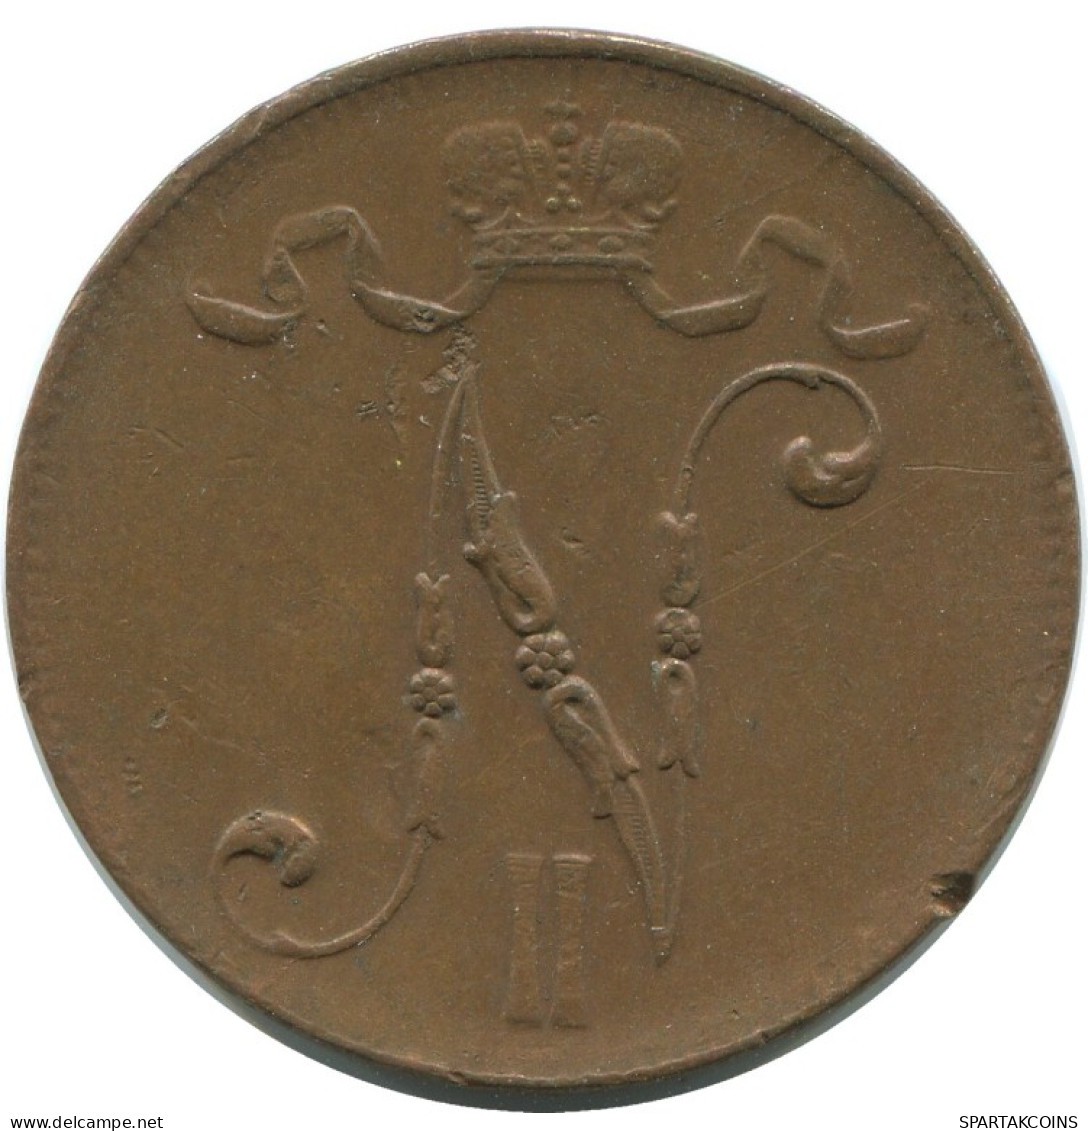 5 PENNIA 1916 FINLANDIA FINLAND Moneda RUSIA RUSSIA EMPIRE #AB147.5.E.A - Finlandia